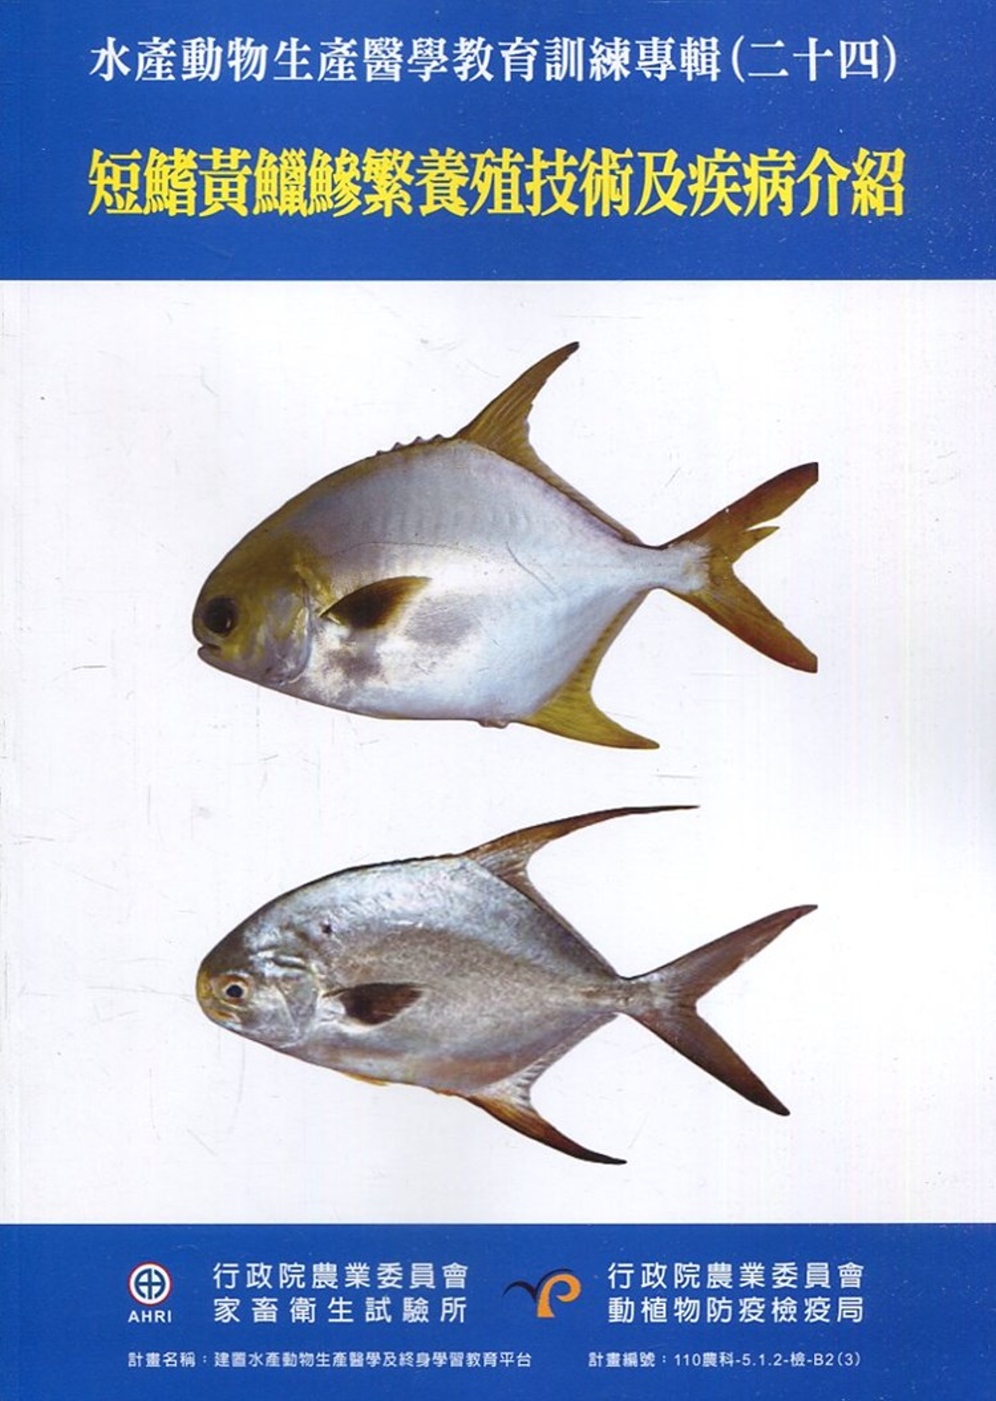 水產動物生產醫學教育訓練專輯(二十四)：短鰭黃鱲鰺繁養殖技術及疾病介紹